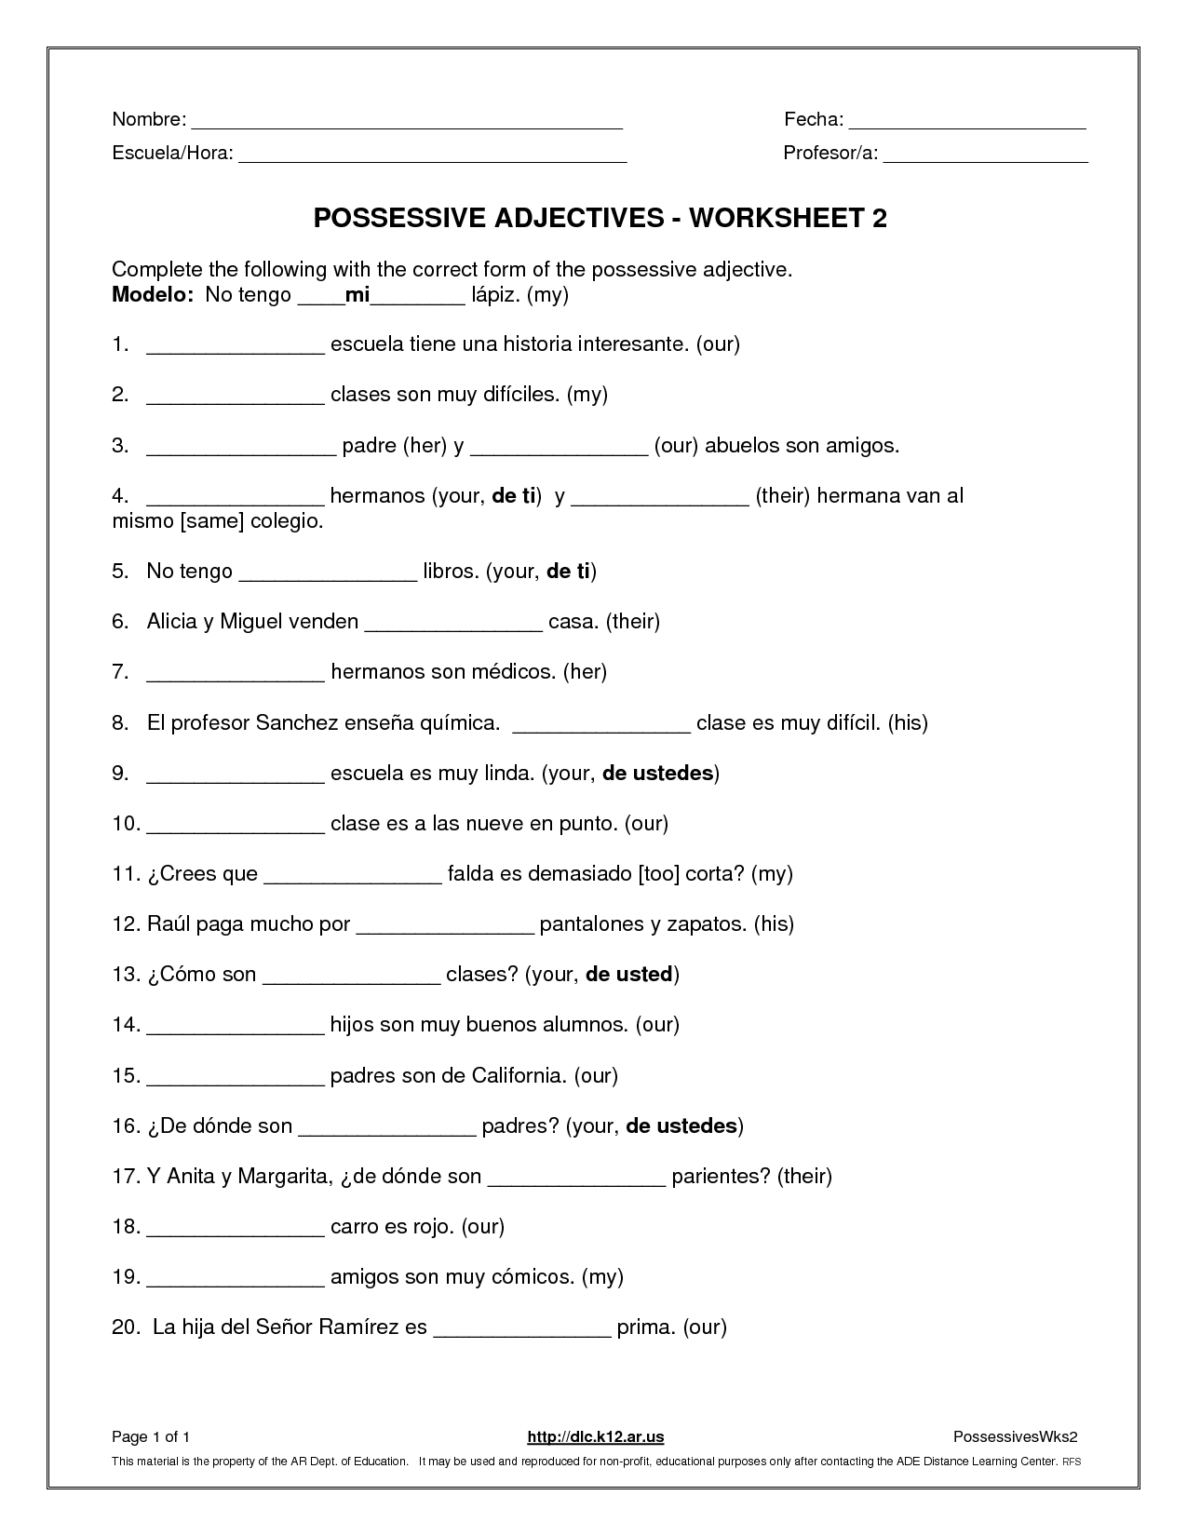 Demonstrative Adjectives Worksheets For Grade 5 Adjectiveworksheets